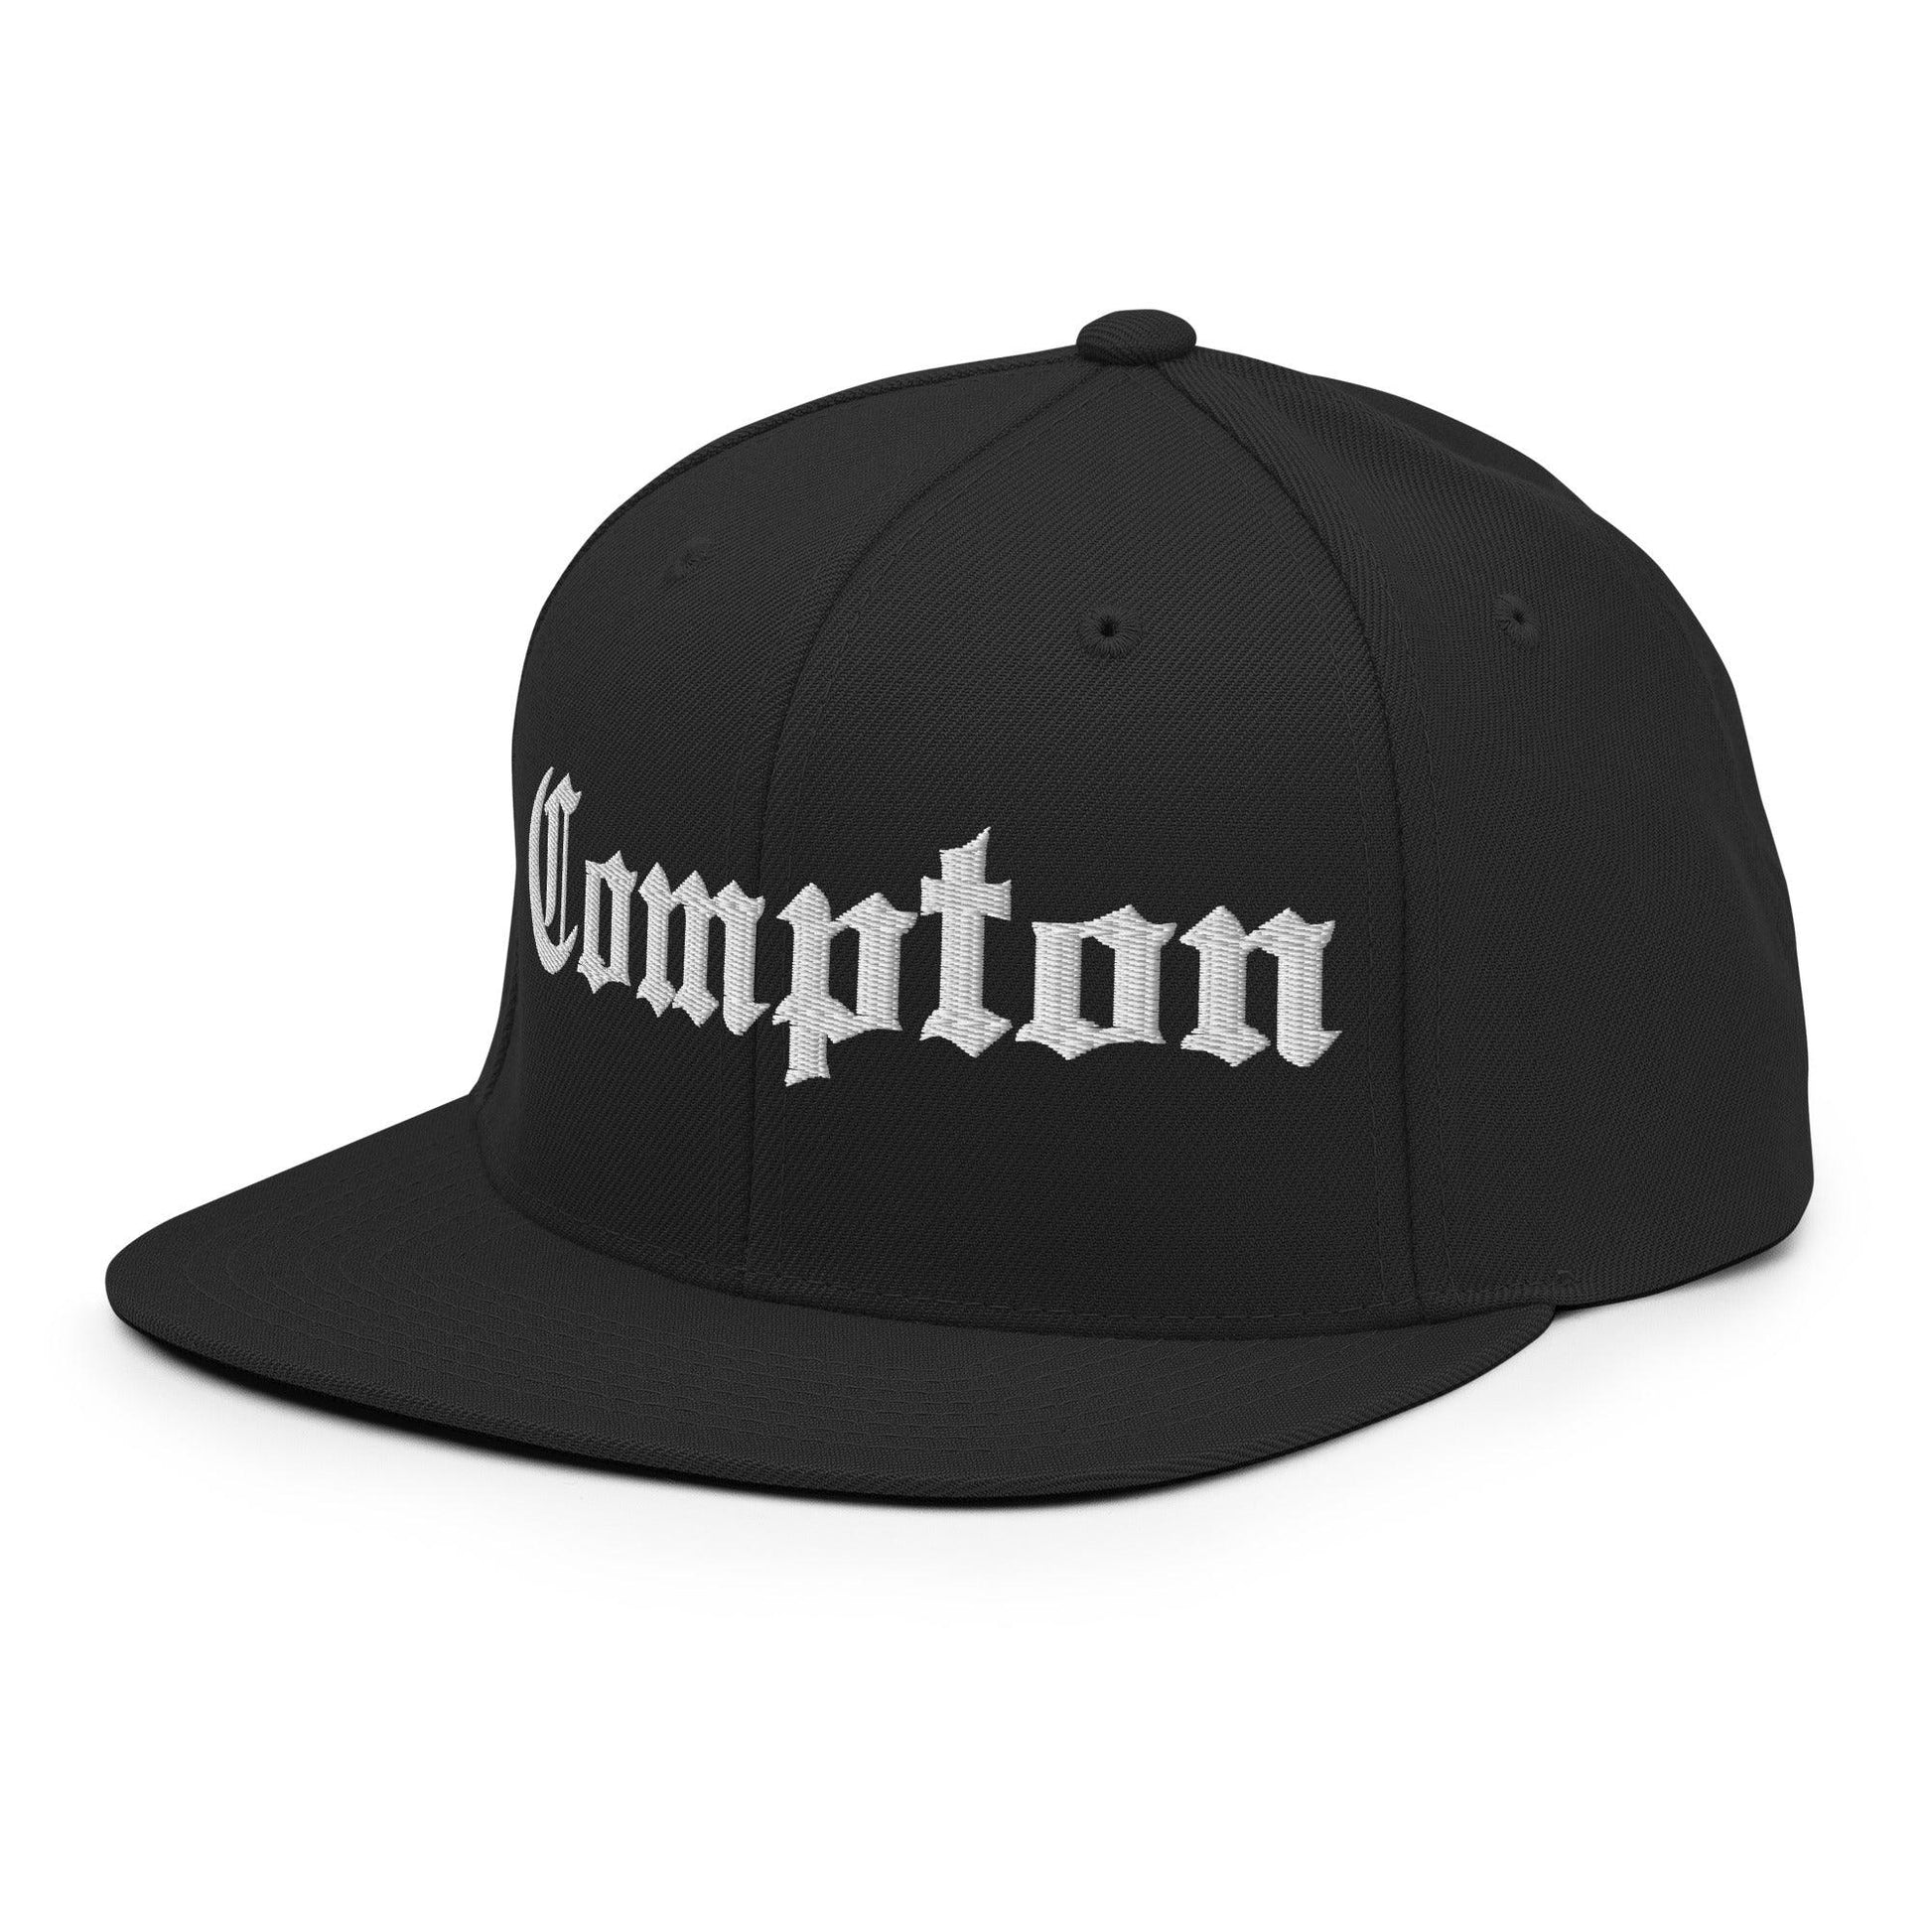 Compton OG Old English Snapback Hat Black